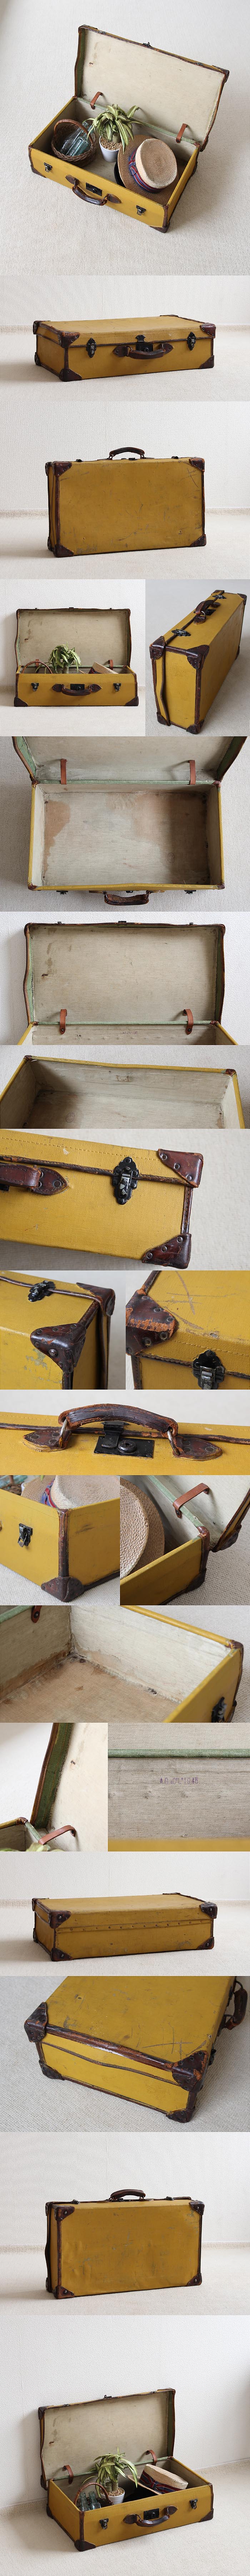 イギリス アンティーク トランク バッグ ディスプレイ スーツケース「古い旅行鞄」V-619